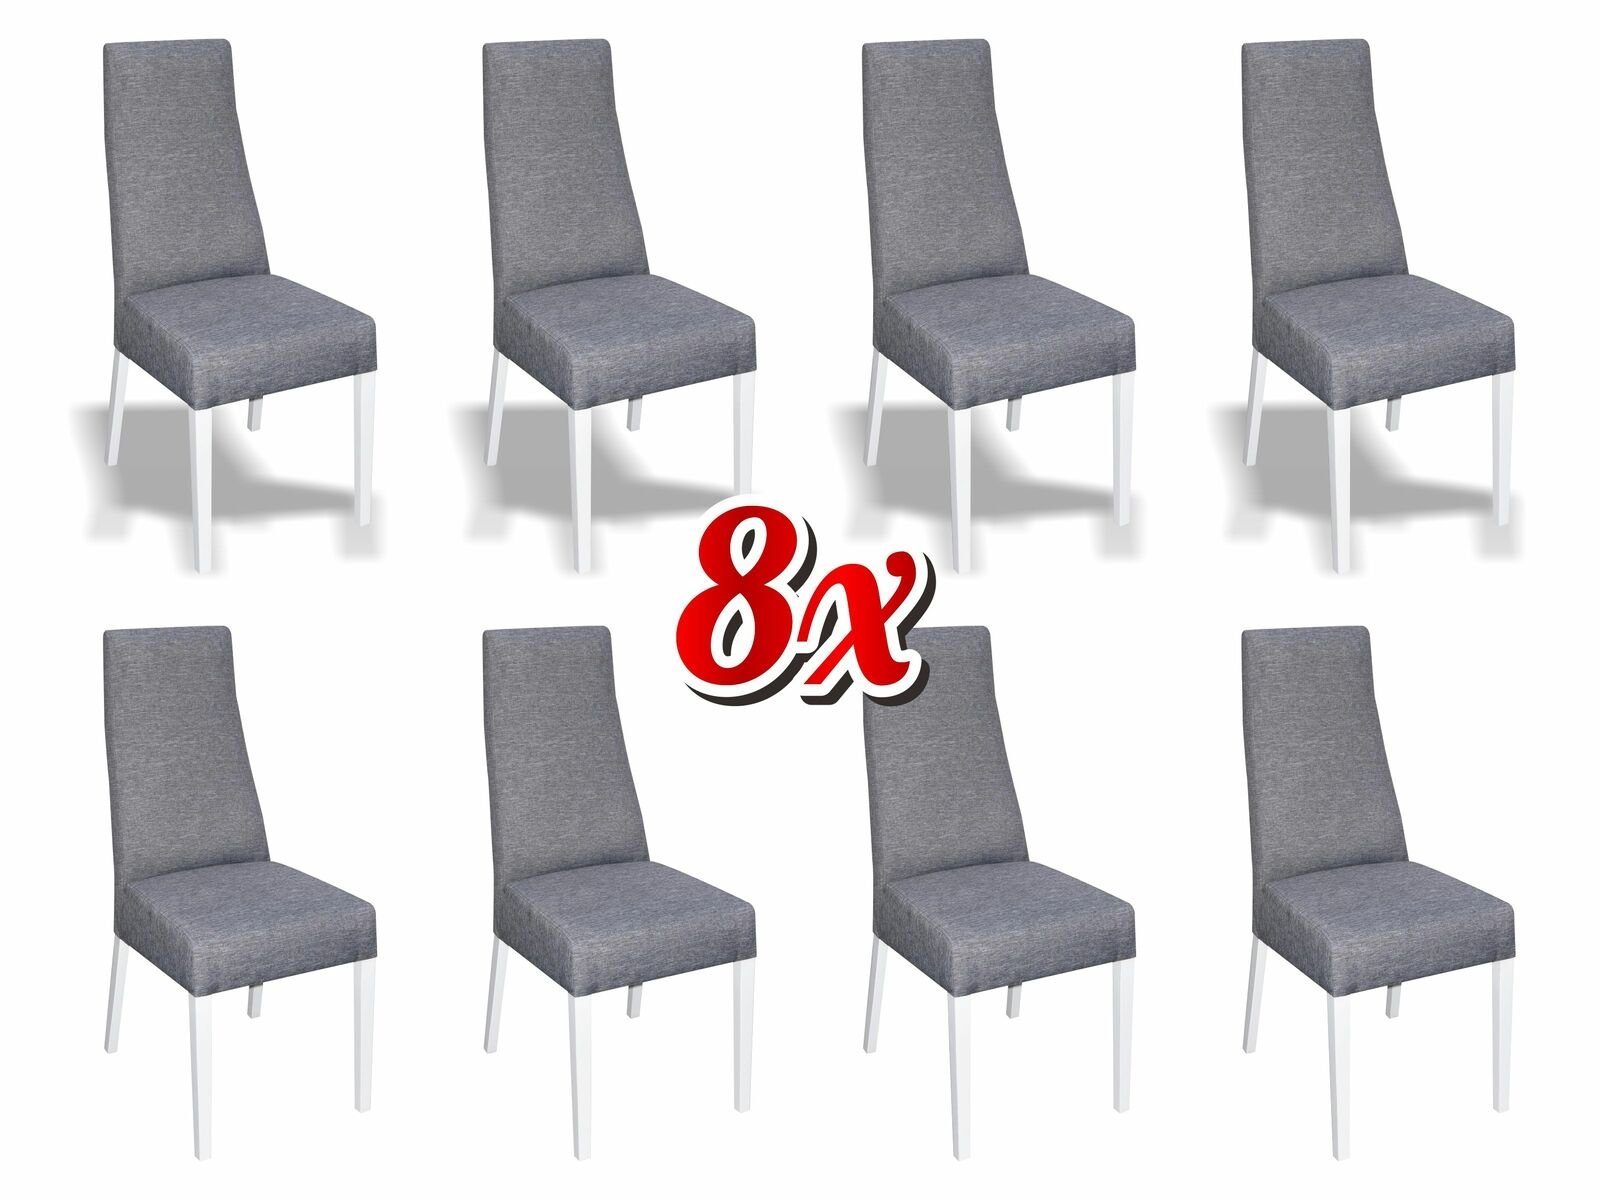 JVmoebel Stuhl, Esszimmer 8x Stühle Stuhl Set Sessel Küche Neu Design Polster Leder Textil Möbel